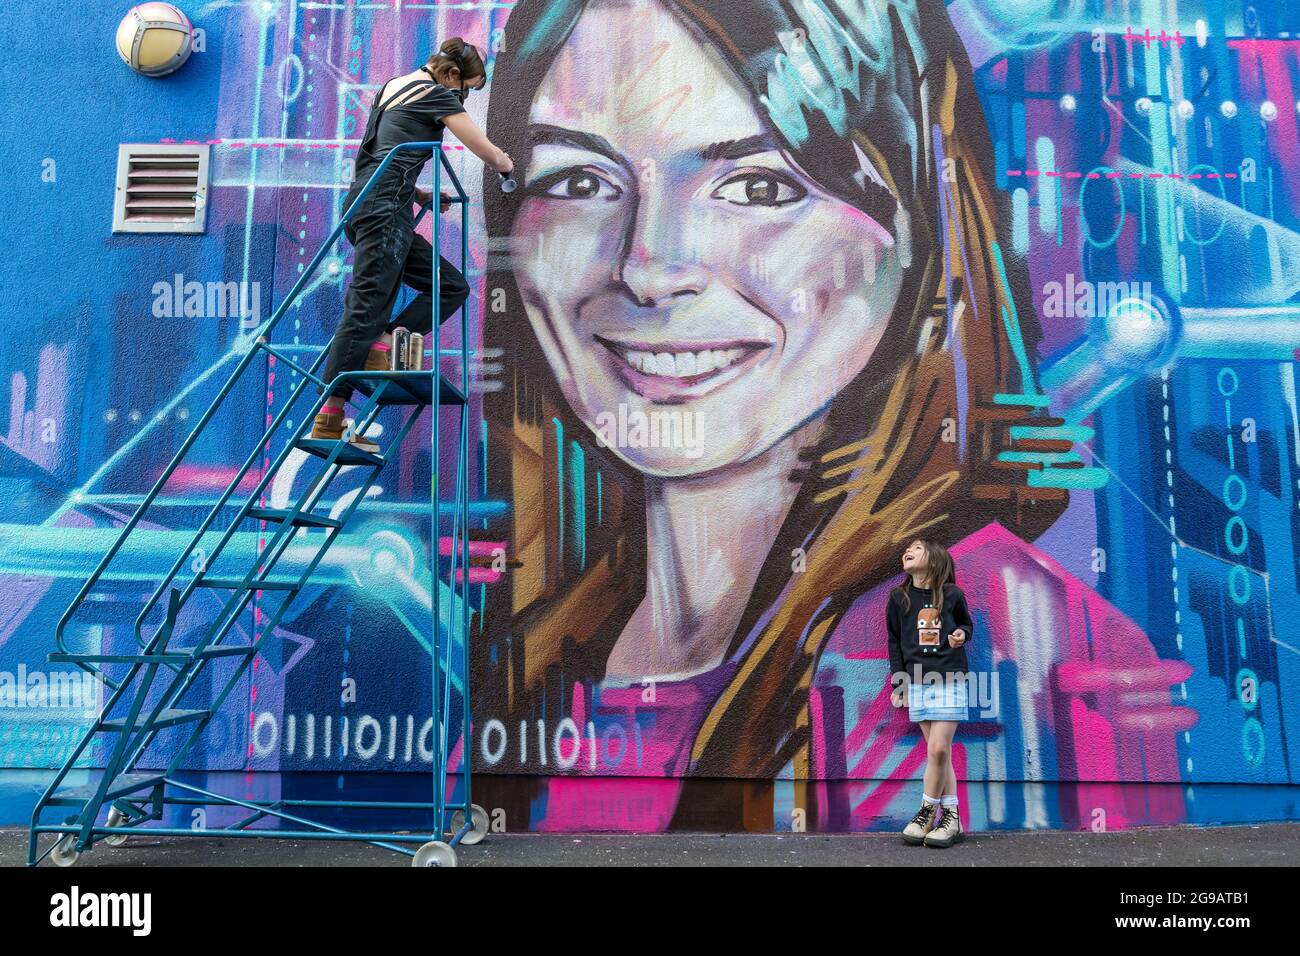 Graffiti-Wandspray, das von der Künstlerin Shona Hardie für das Edinburgh Science Festival von CEO Natalie Duffield gemalt wurde, um Frauen in STEM, Schottland, Großbritannien, zu feiern Stockfoto